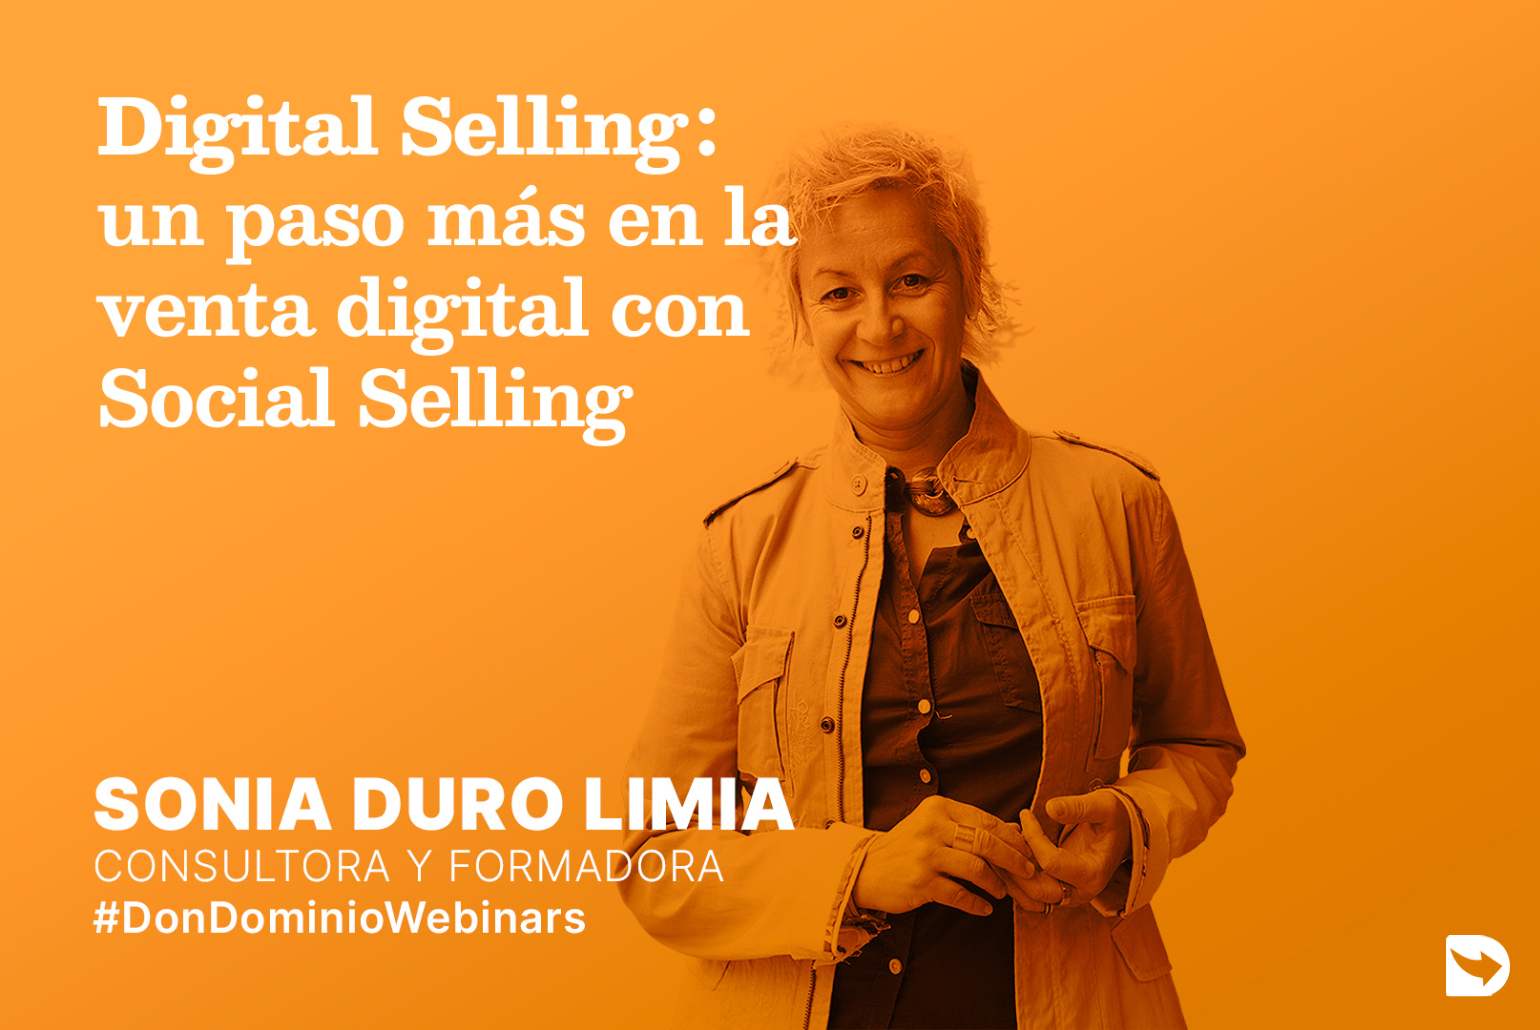 DonDominio Webinar: Digital Selling, un paso más en la Venta digital con Social Selling